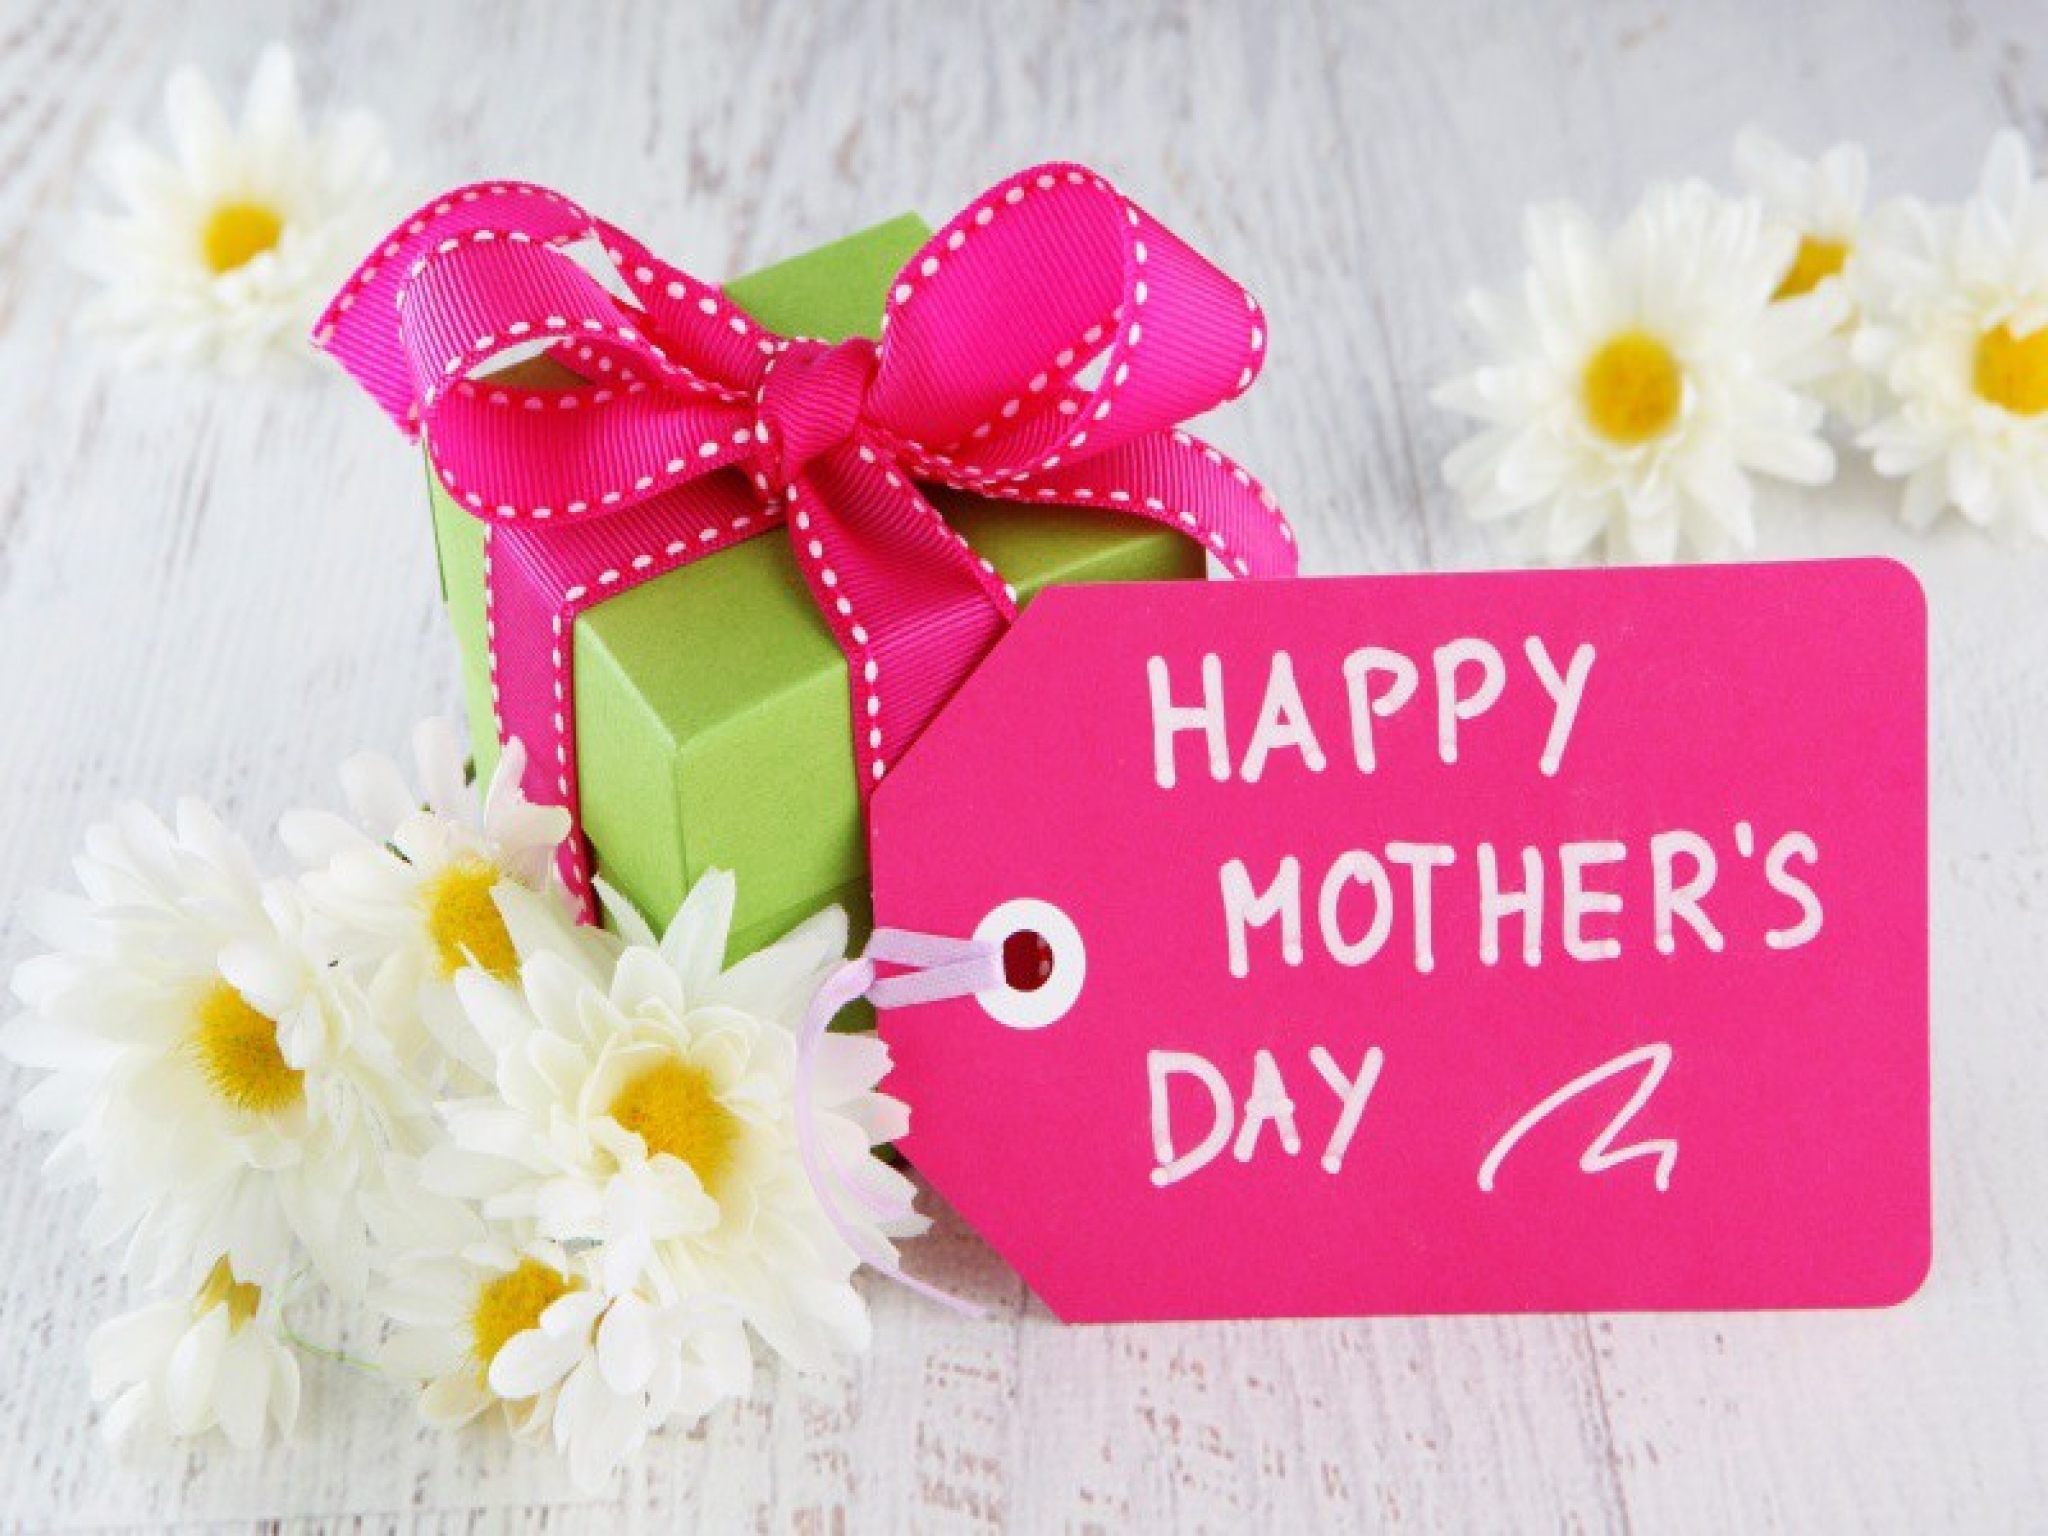 صور وكروت وبطاقات معايدة لعيد الأم - Happy Mother's Day 2020 9